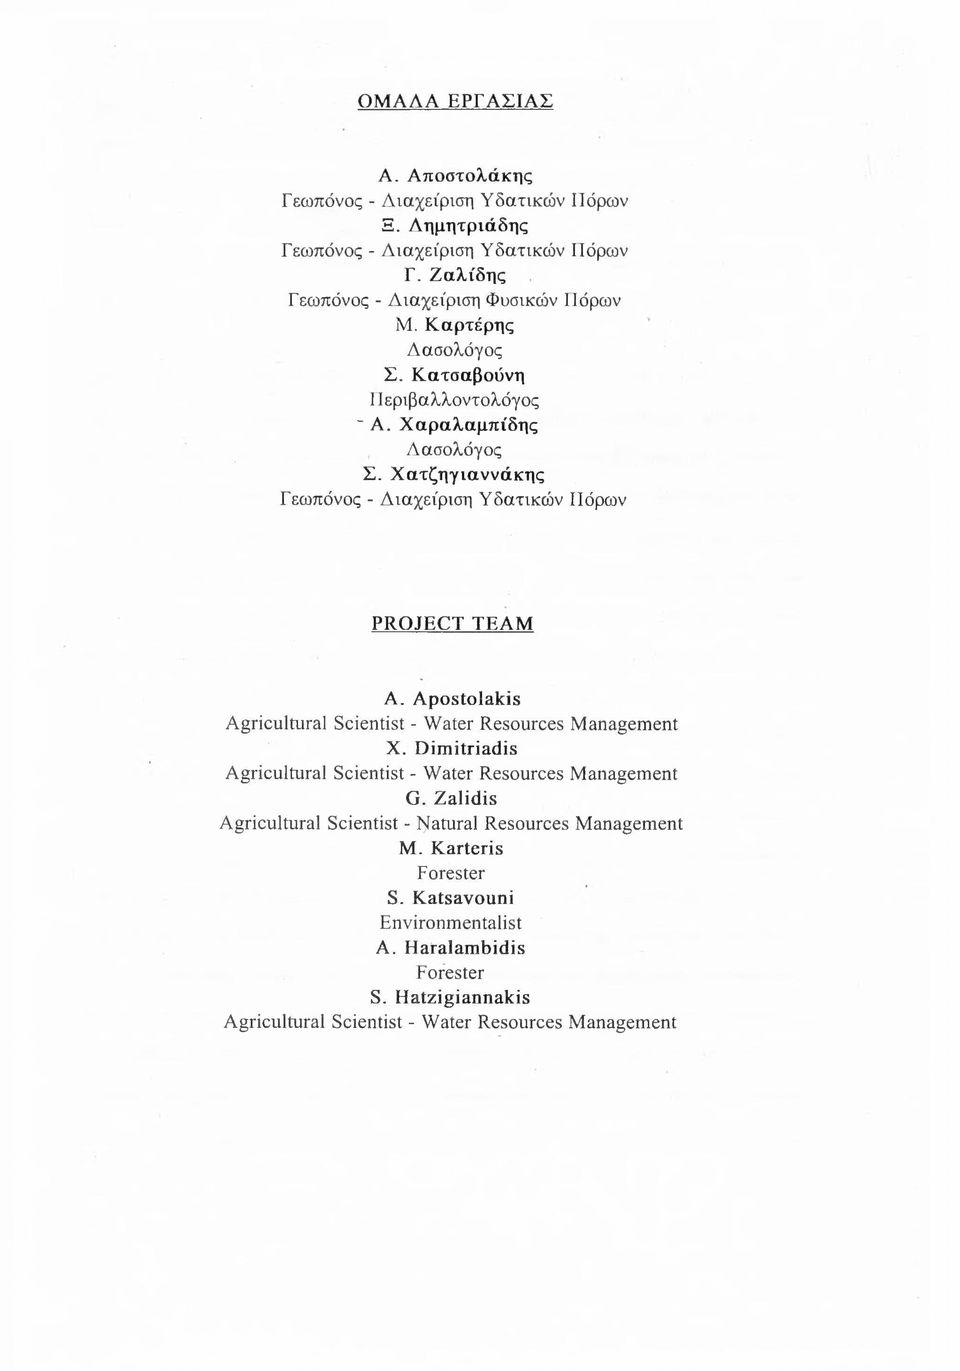 Χατζηγιαννάκης Γεωπόνος - Διαχείριση Υδατικών Πόρων PROJECT TEAM A. Apostolakis Agricultural Scientist - Water Resources Management X.